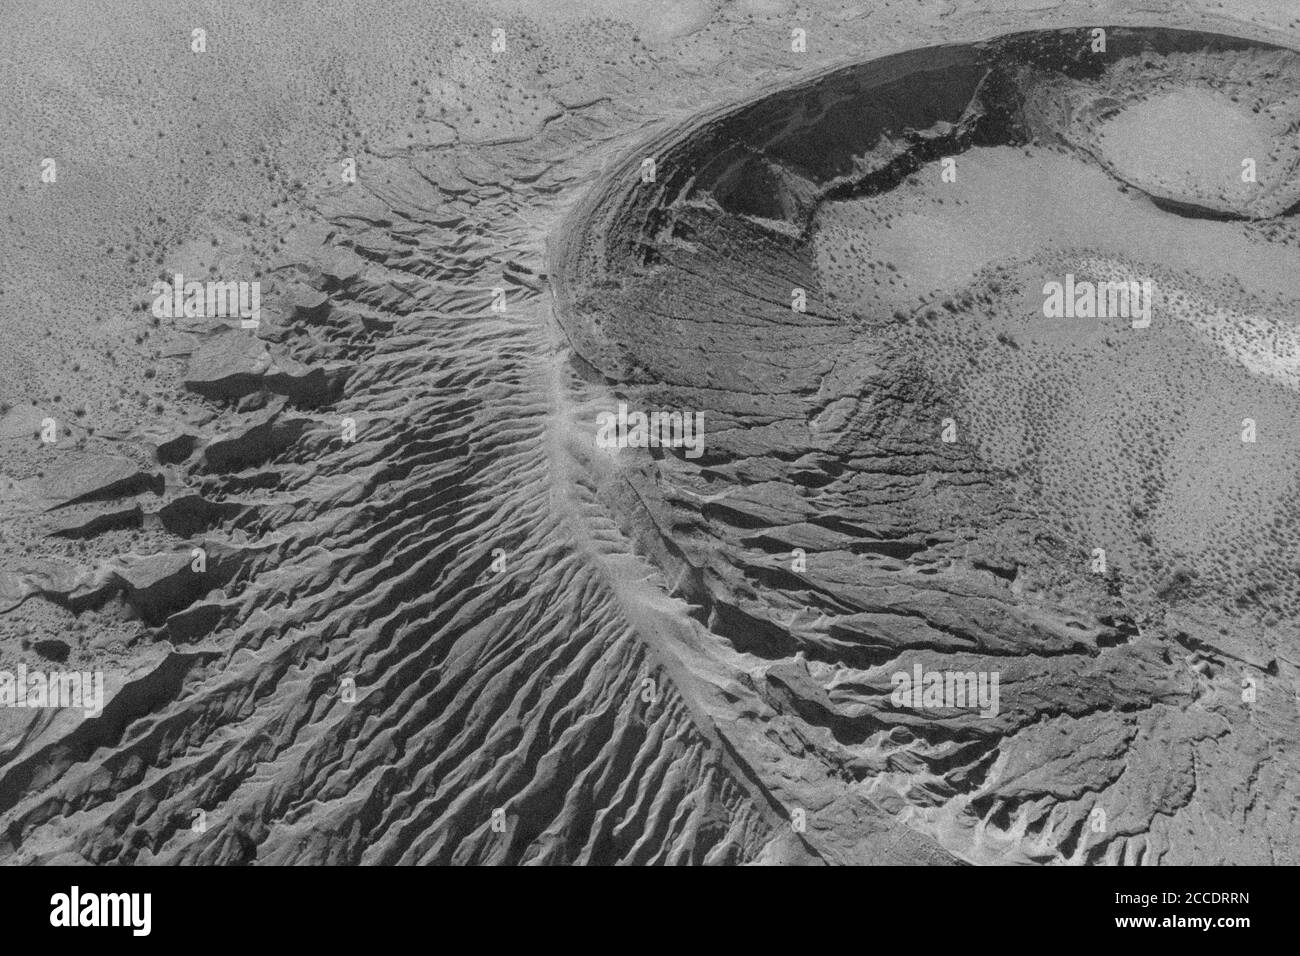 Luftaufnahme des maar-Typ Vulkankraters, Cater Cerro Colorado in den Bergen des El Pinacate Biosphere Reserve und der großen Altar Wüste in Sonora, Mexiko. Erbe der Menschheit durch die unesco. Typisches Wüstenökosystem in Arizona, nur wenige Kilometer vom Ort entfernt. Der Vulkan ist der zweitgrößte in einer ausgedehnten Kette von Vulkankegeln und Krater. Dieser Krater unterscheidet sich von den anderen durch seine rötliche Farbe und seine Bildung mit Tonmaterial (Foto von Luis Gutierrez / Norte Photo) Vista aerea del cráter volcánico tipo maar, cater Cerro Colorado en la sierra de la Reserva de la Bio Stockfoto